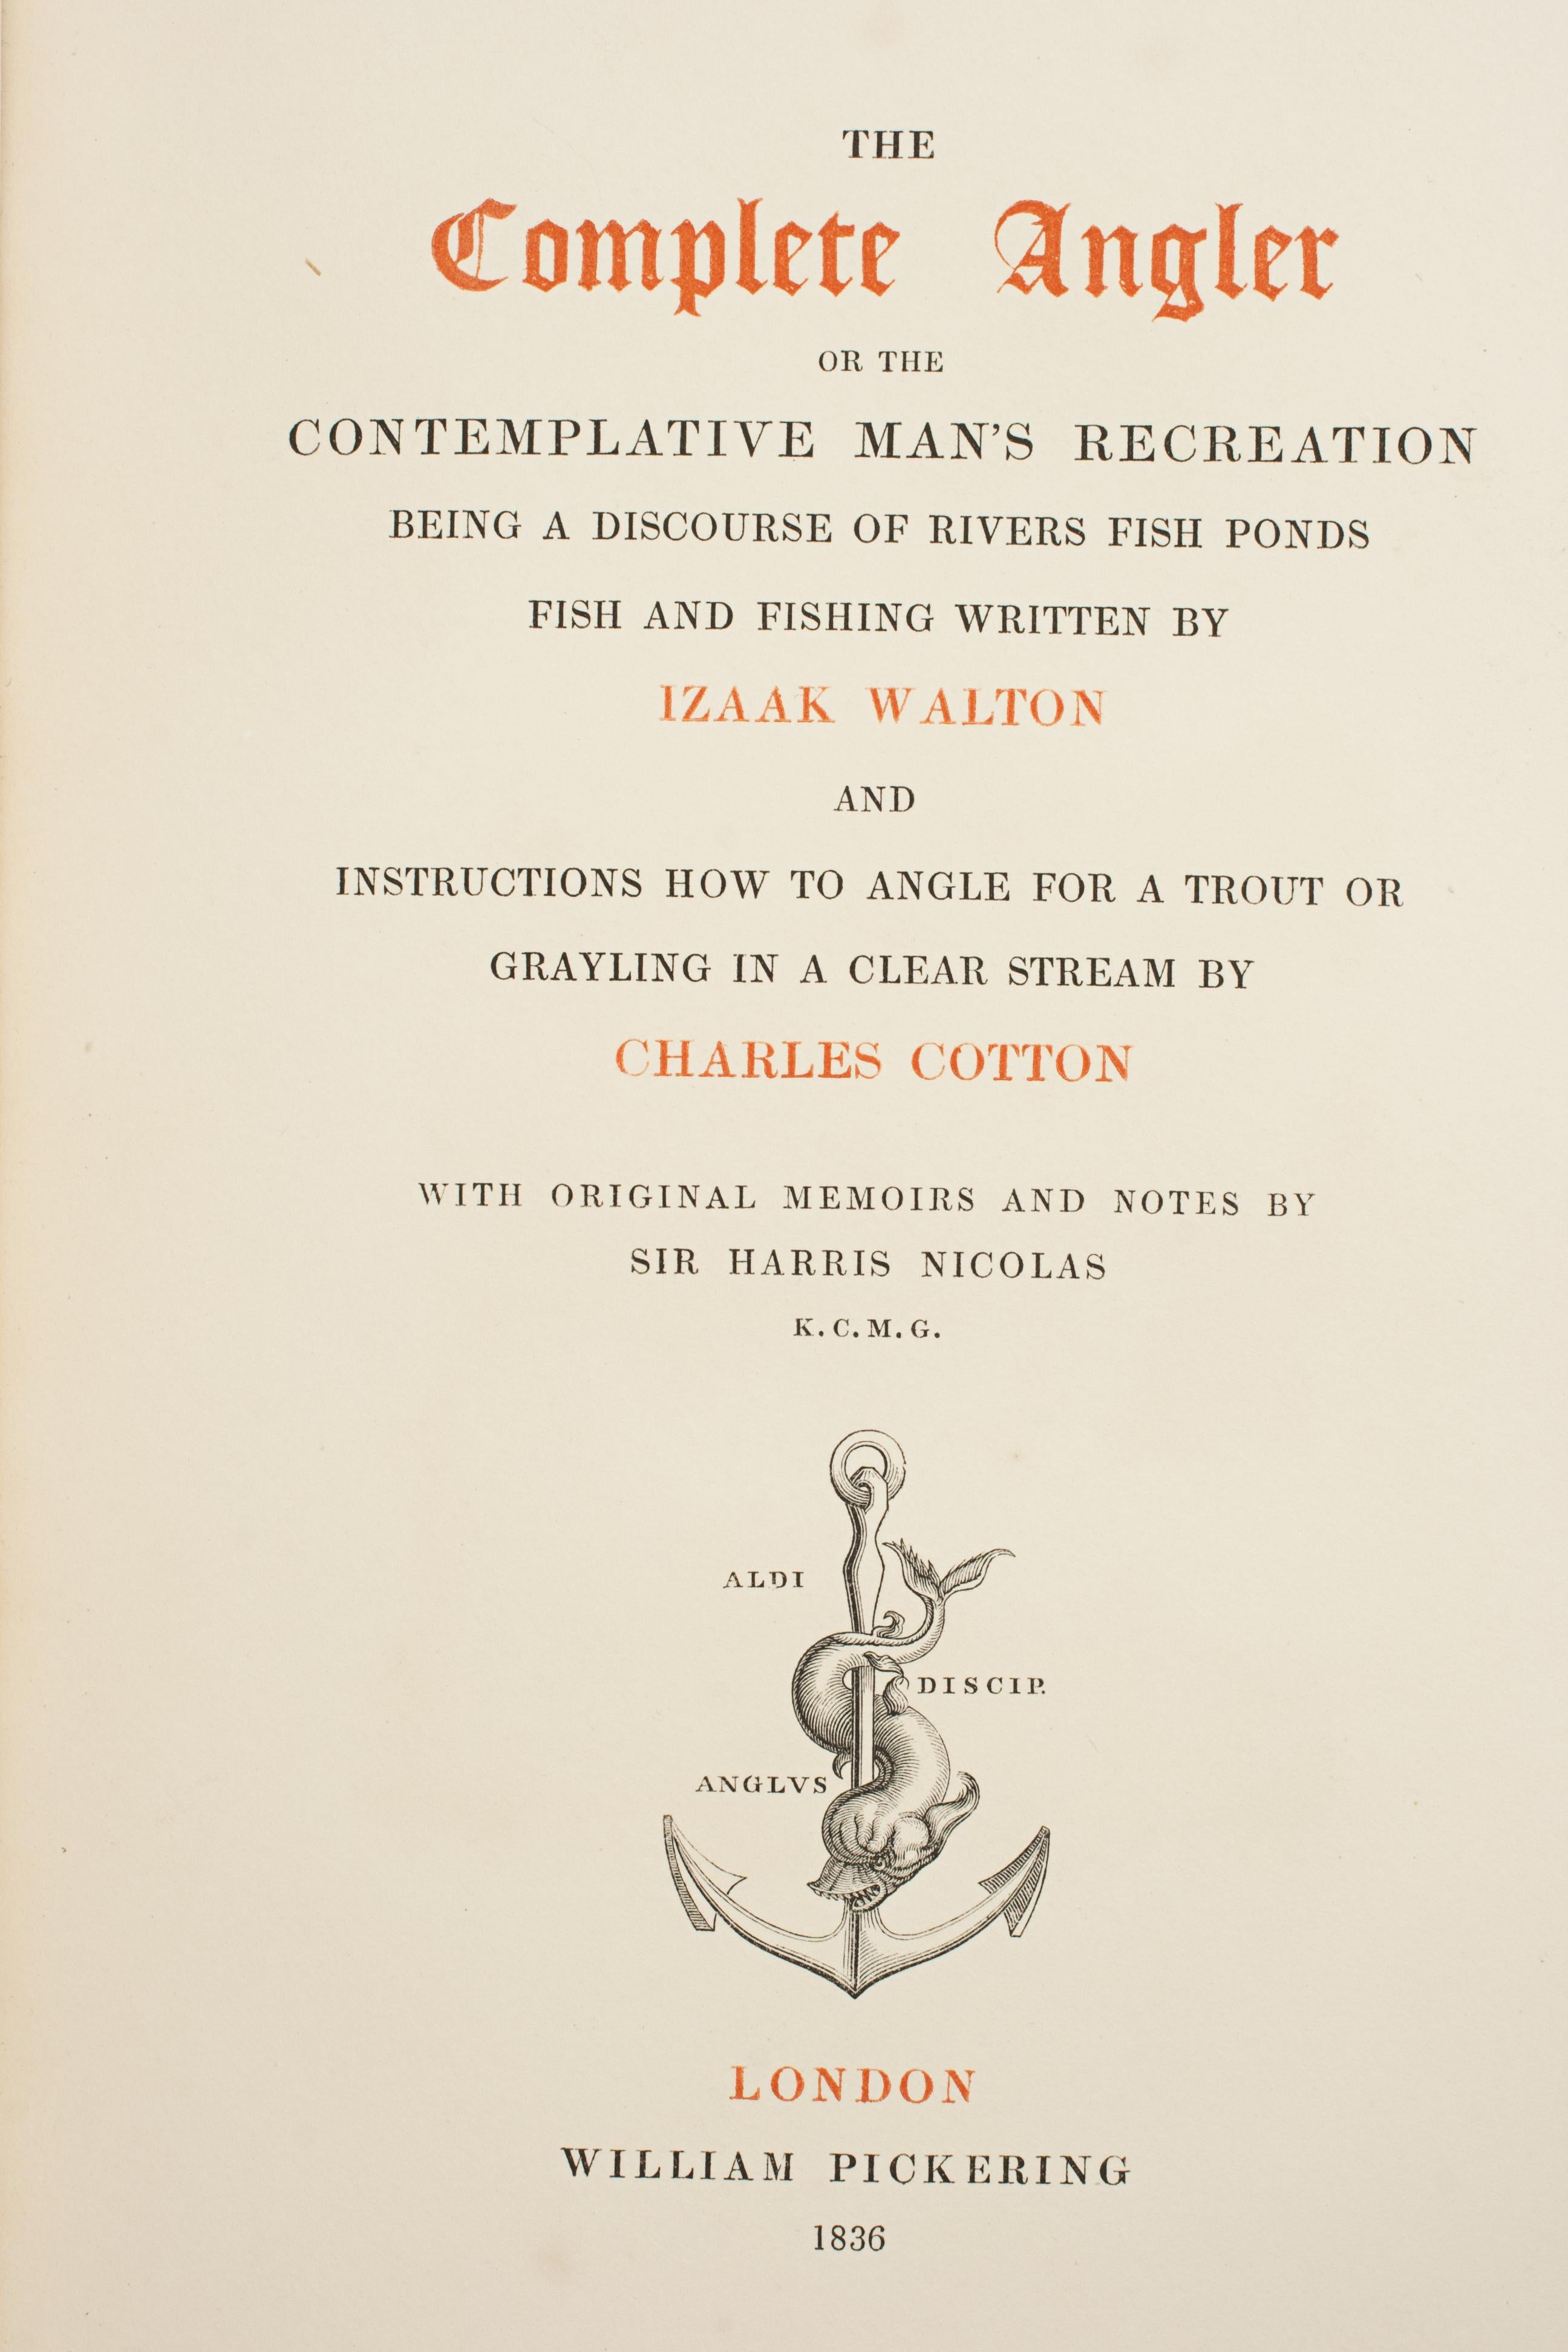 Complete Angler von Izaak Walton, Fischerbuch des 19. Jahrhunderts, zwei Bände 2